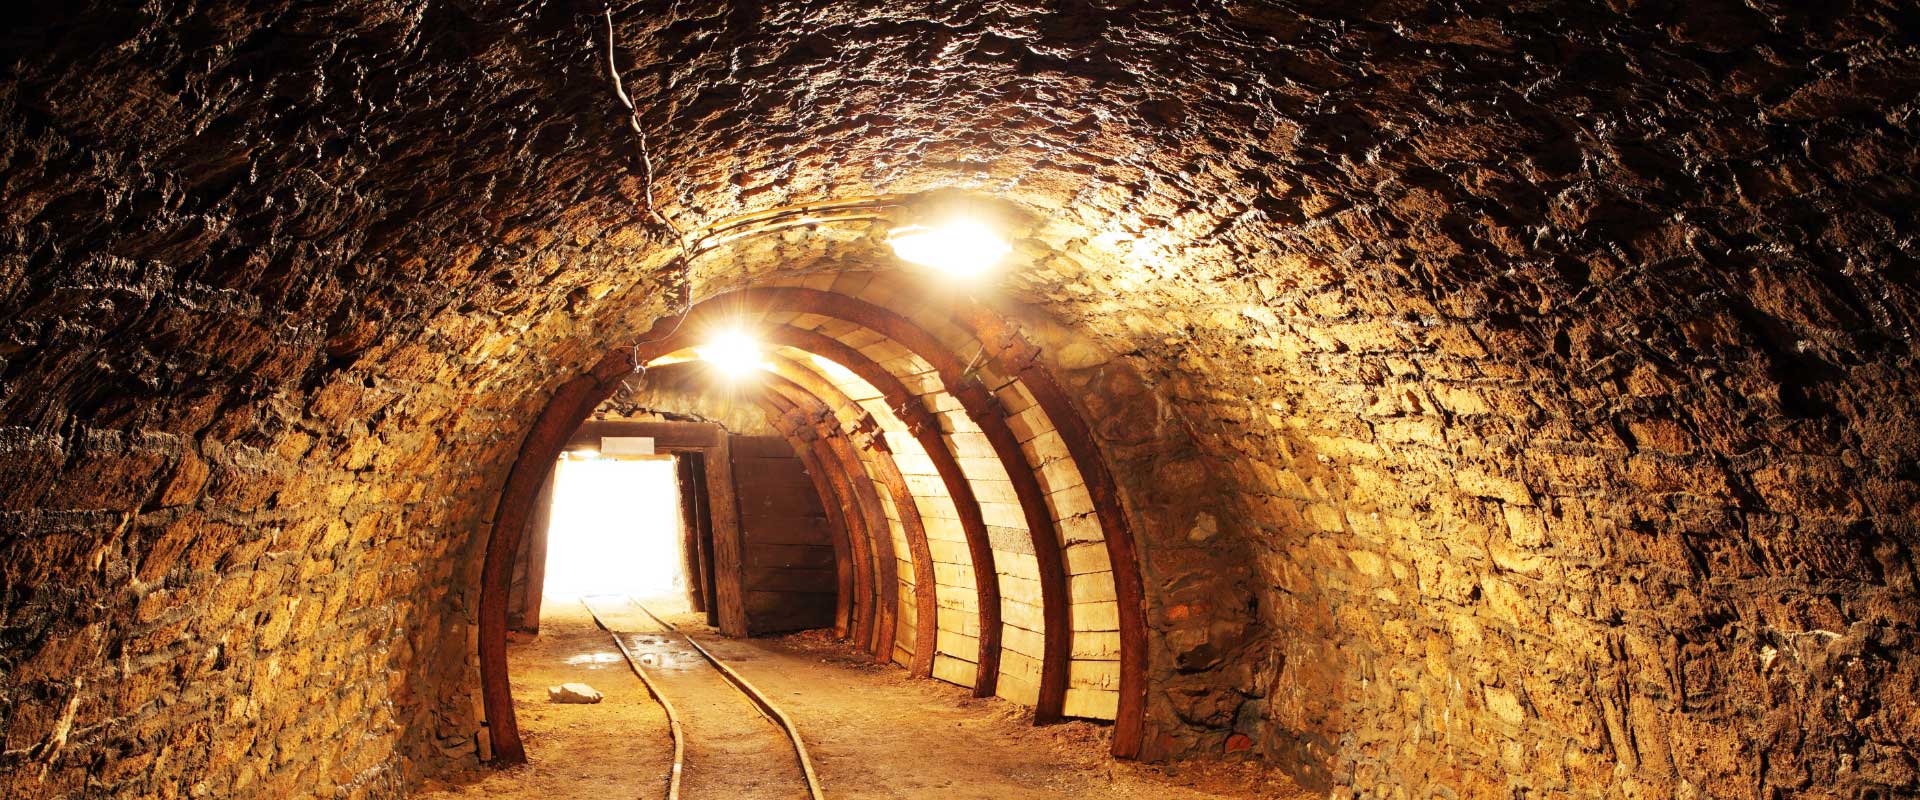 underground-mines-with-rails